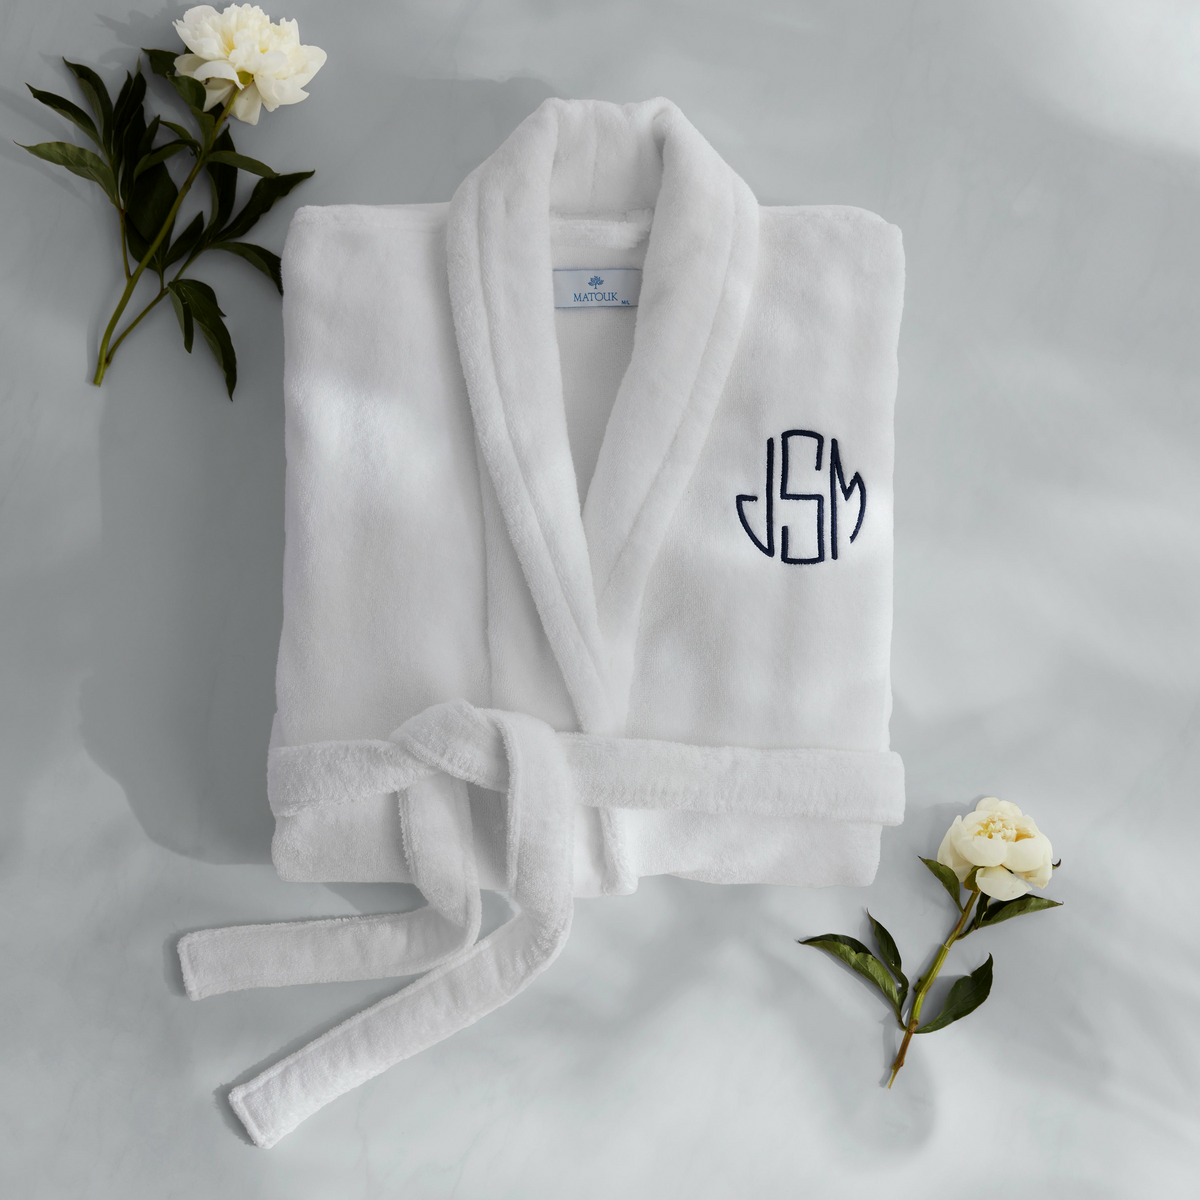 Matouk Milagro Bath Robe Lifestyle Folded with White Flowers Night